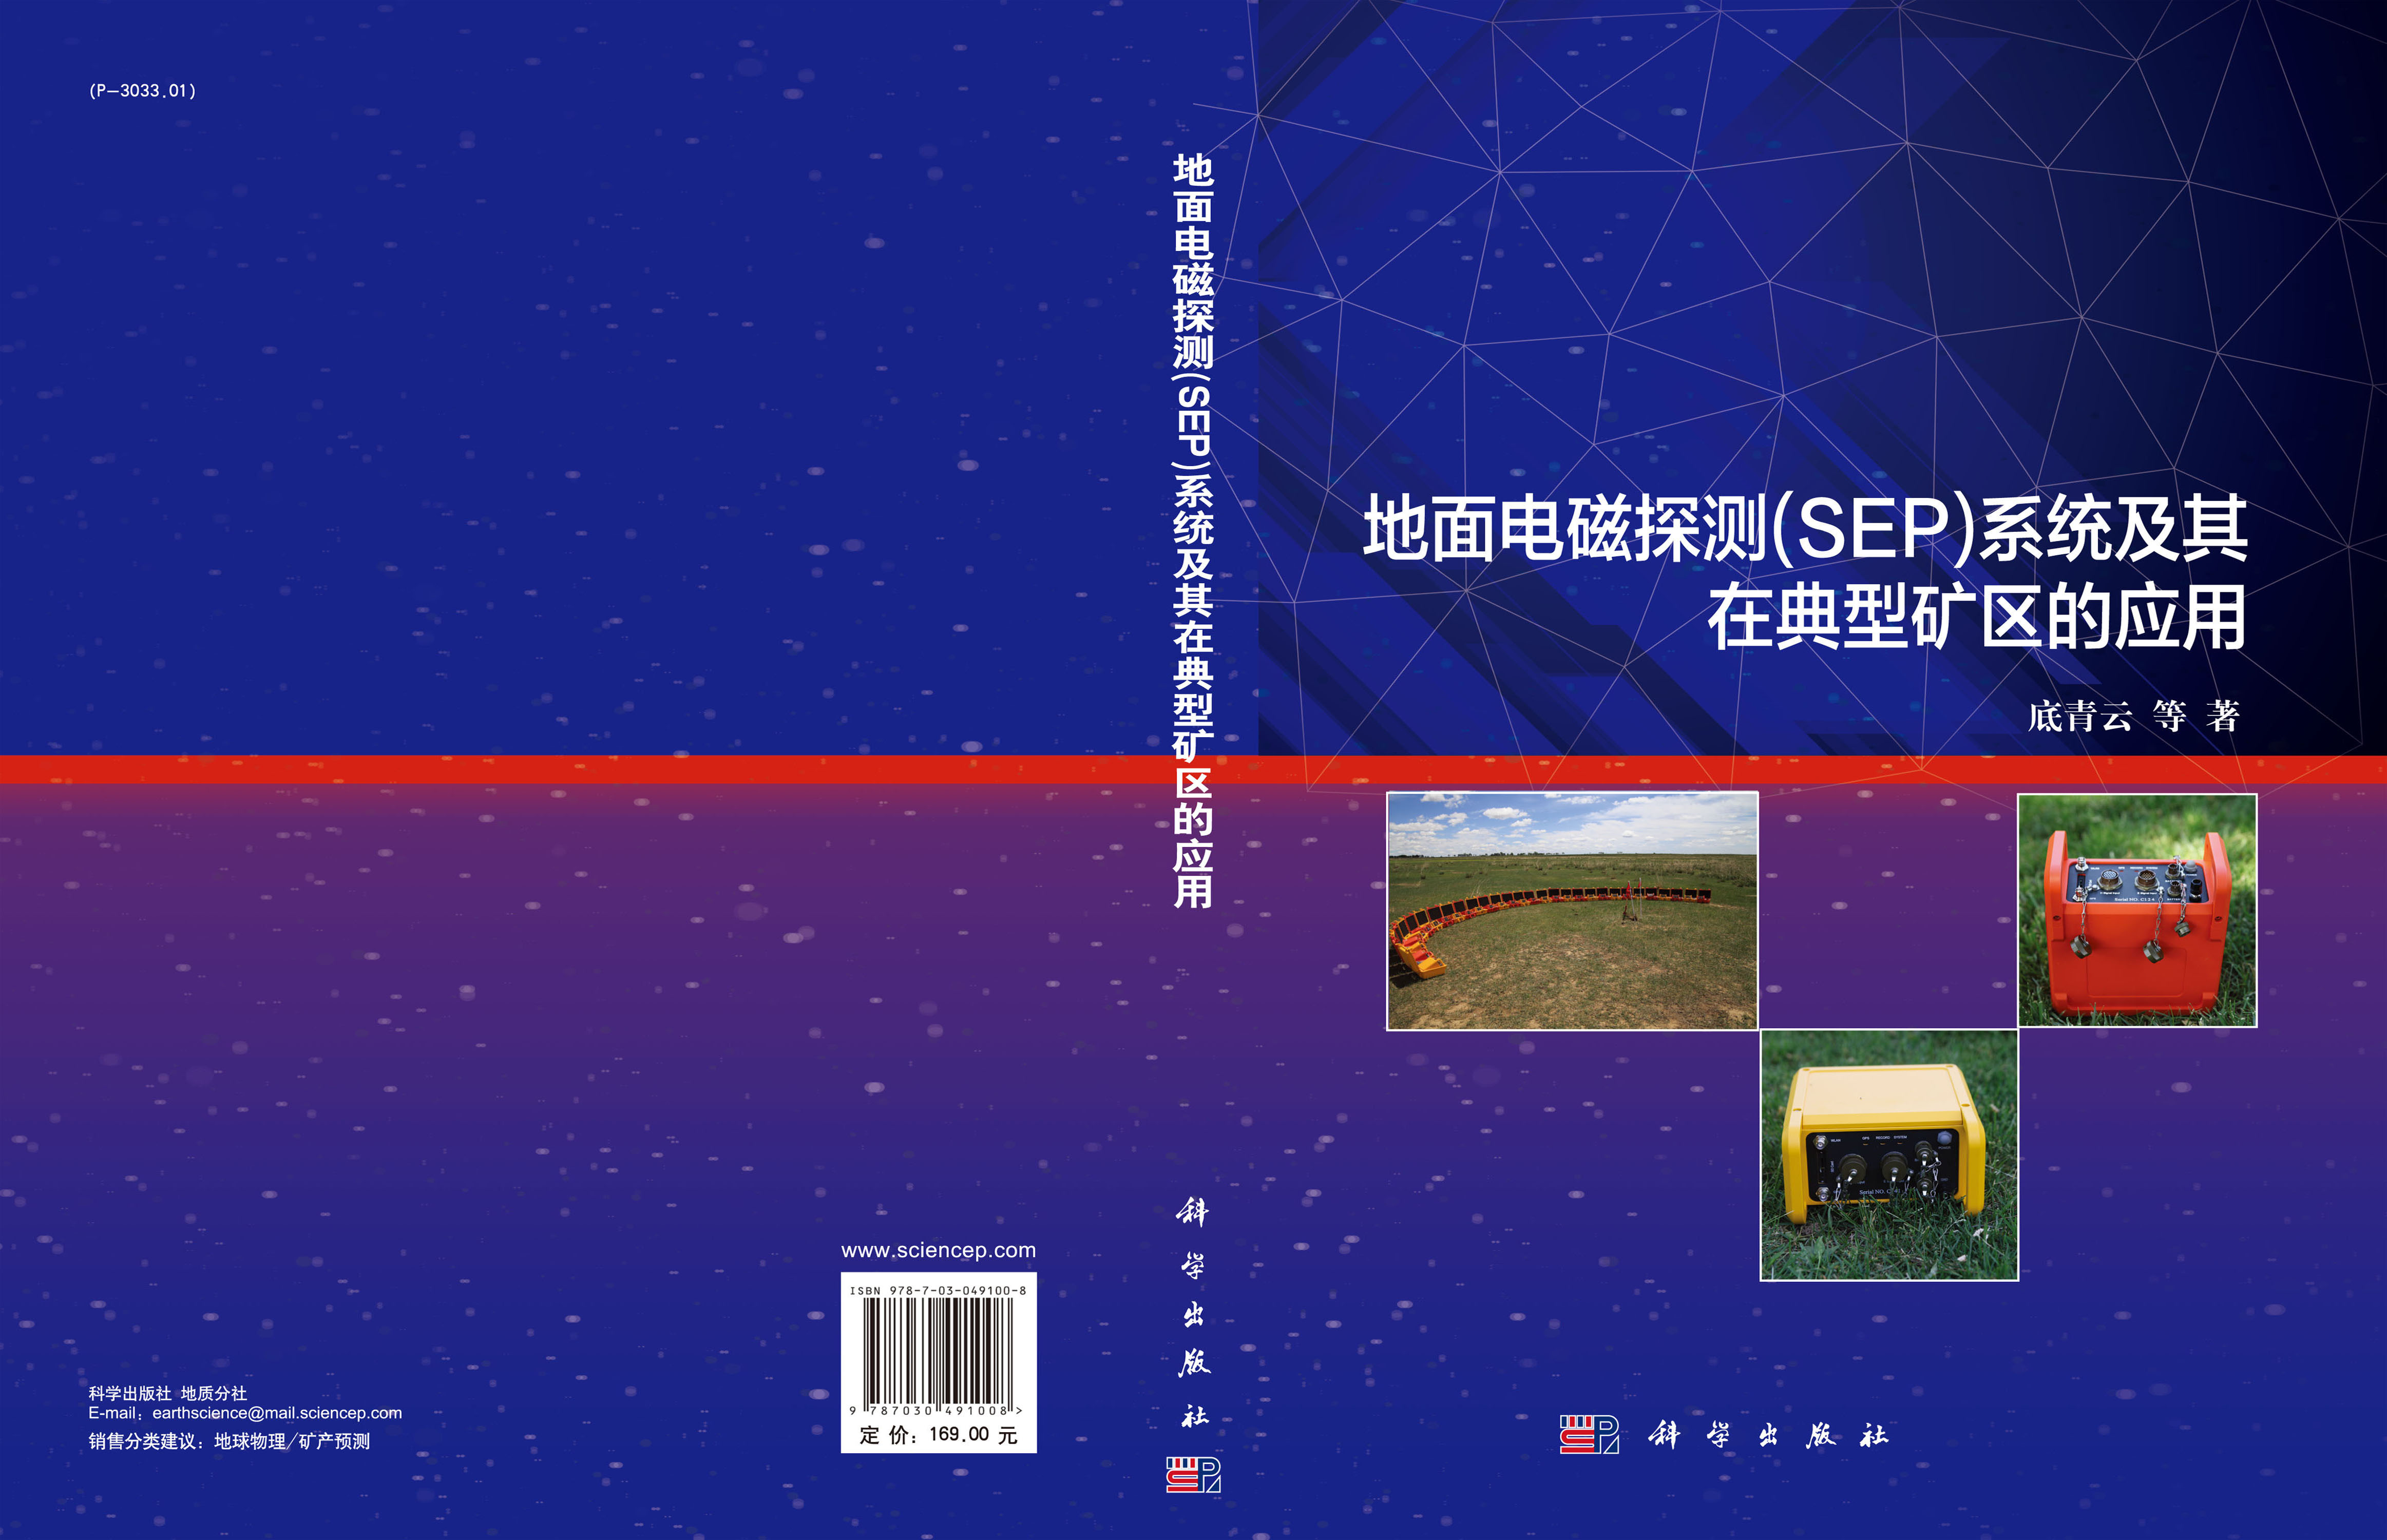 地面电磁探测（SEP）系统及其在典型矿区的应用